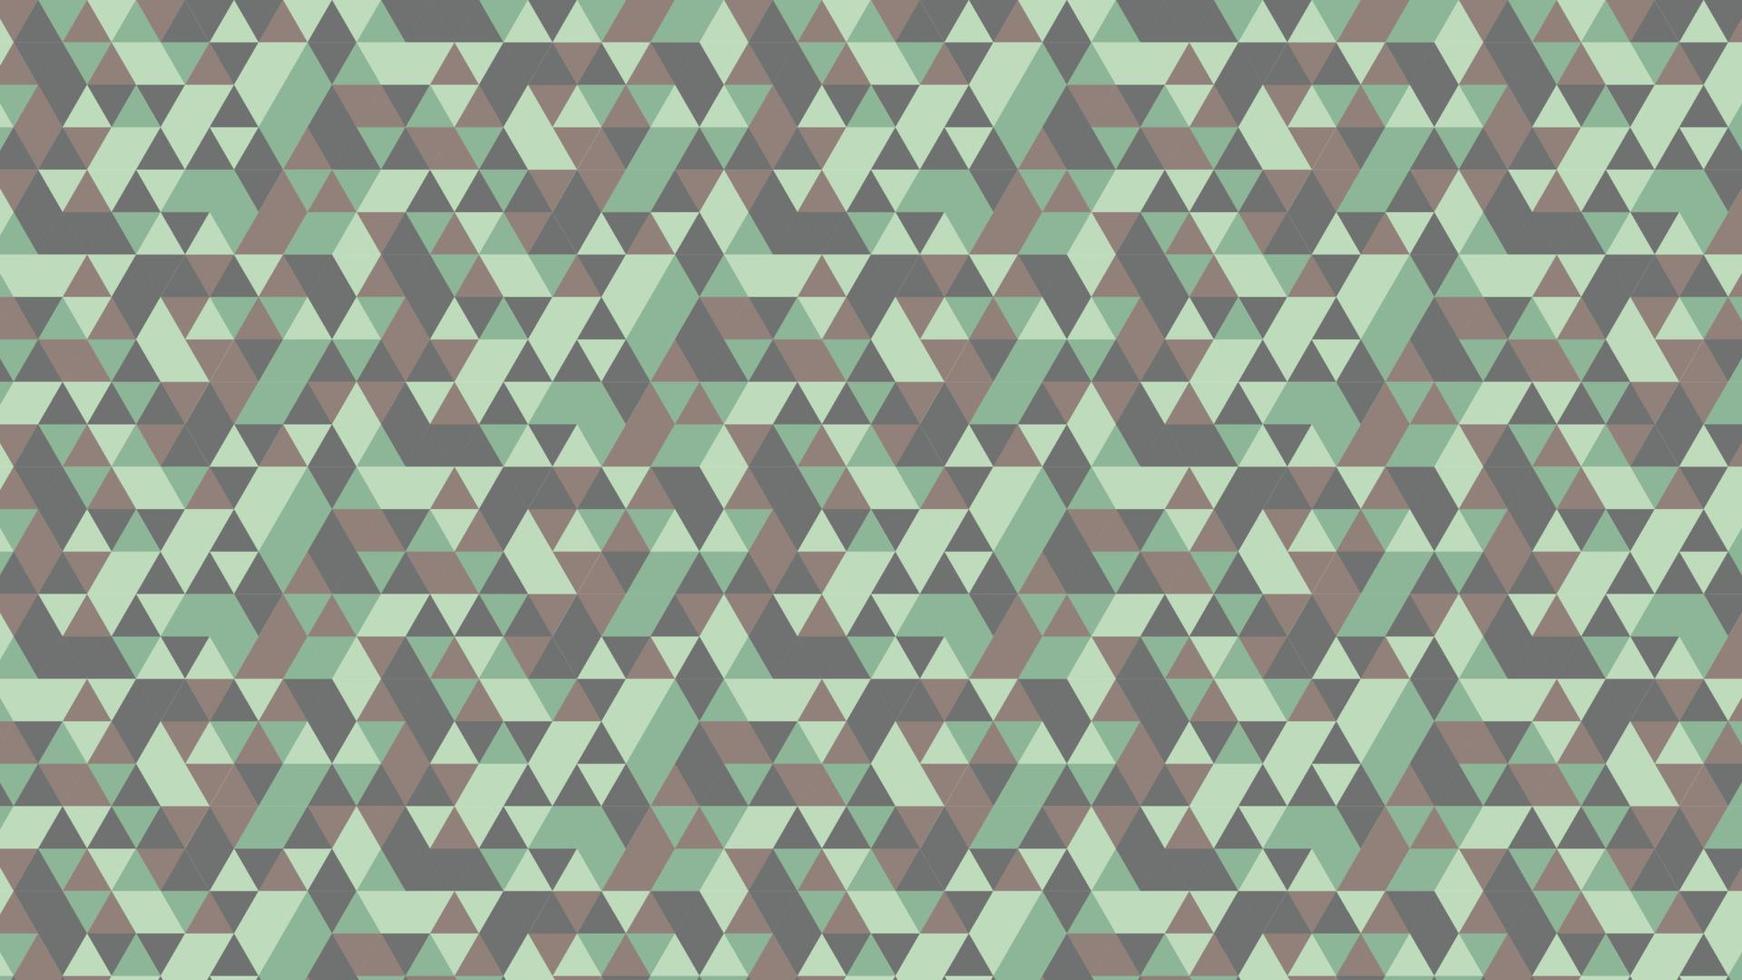 willekeurige achtergrondkleur met driehoekige vorm vector